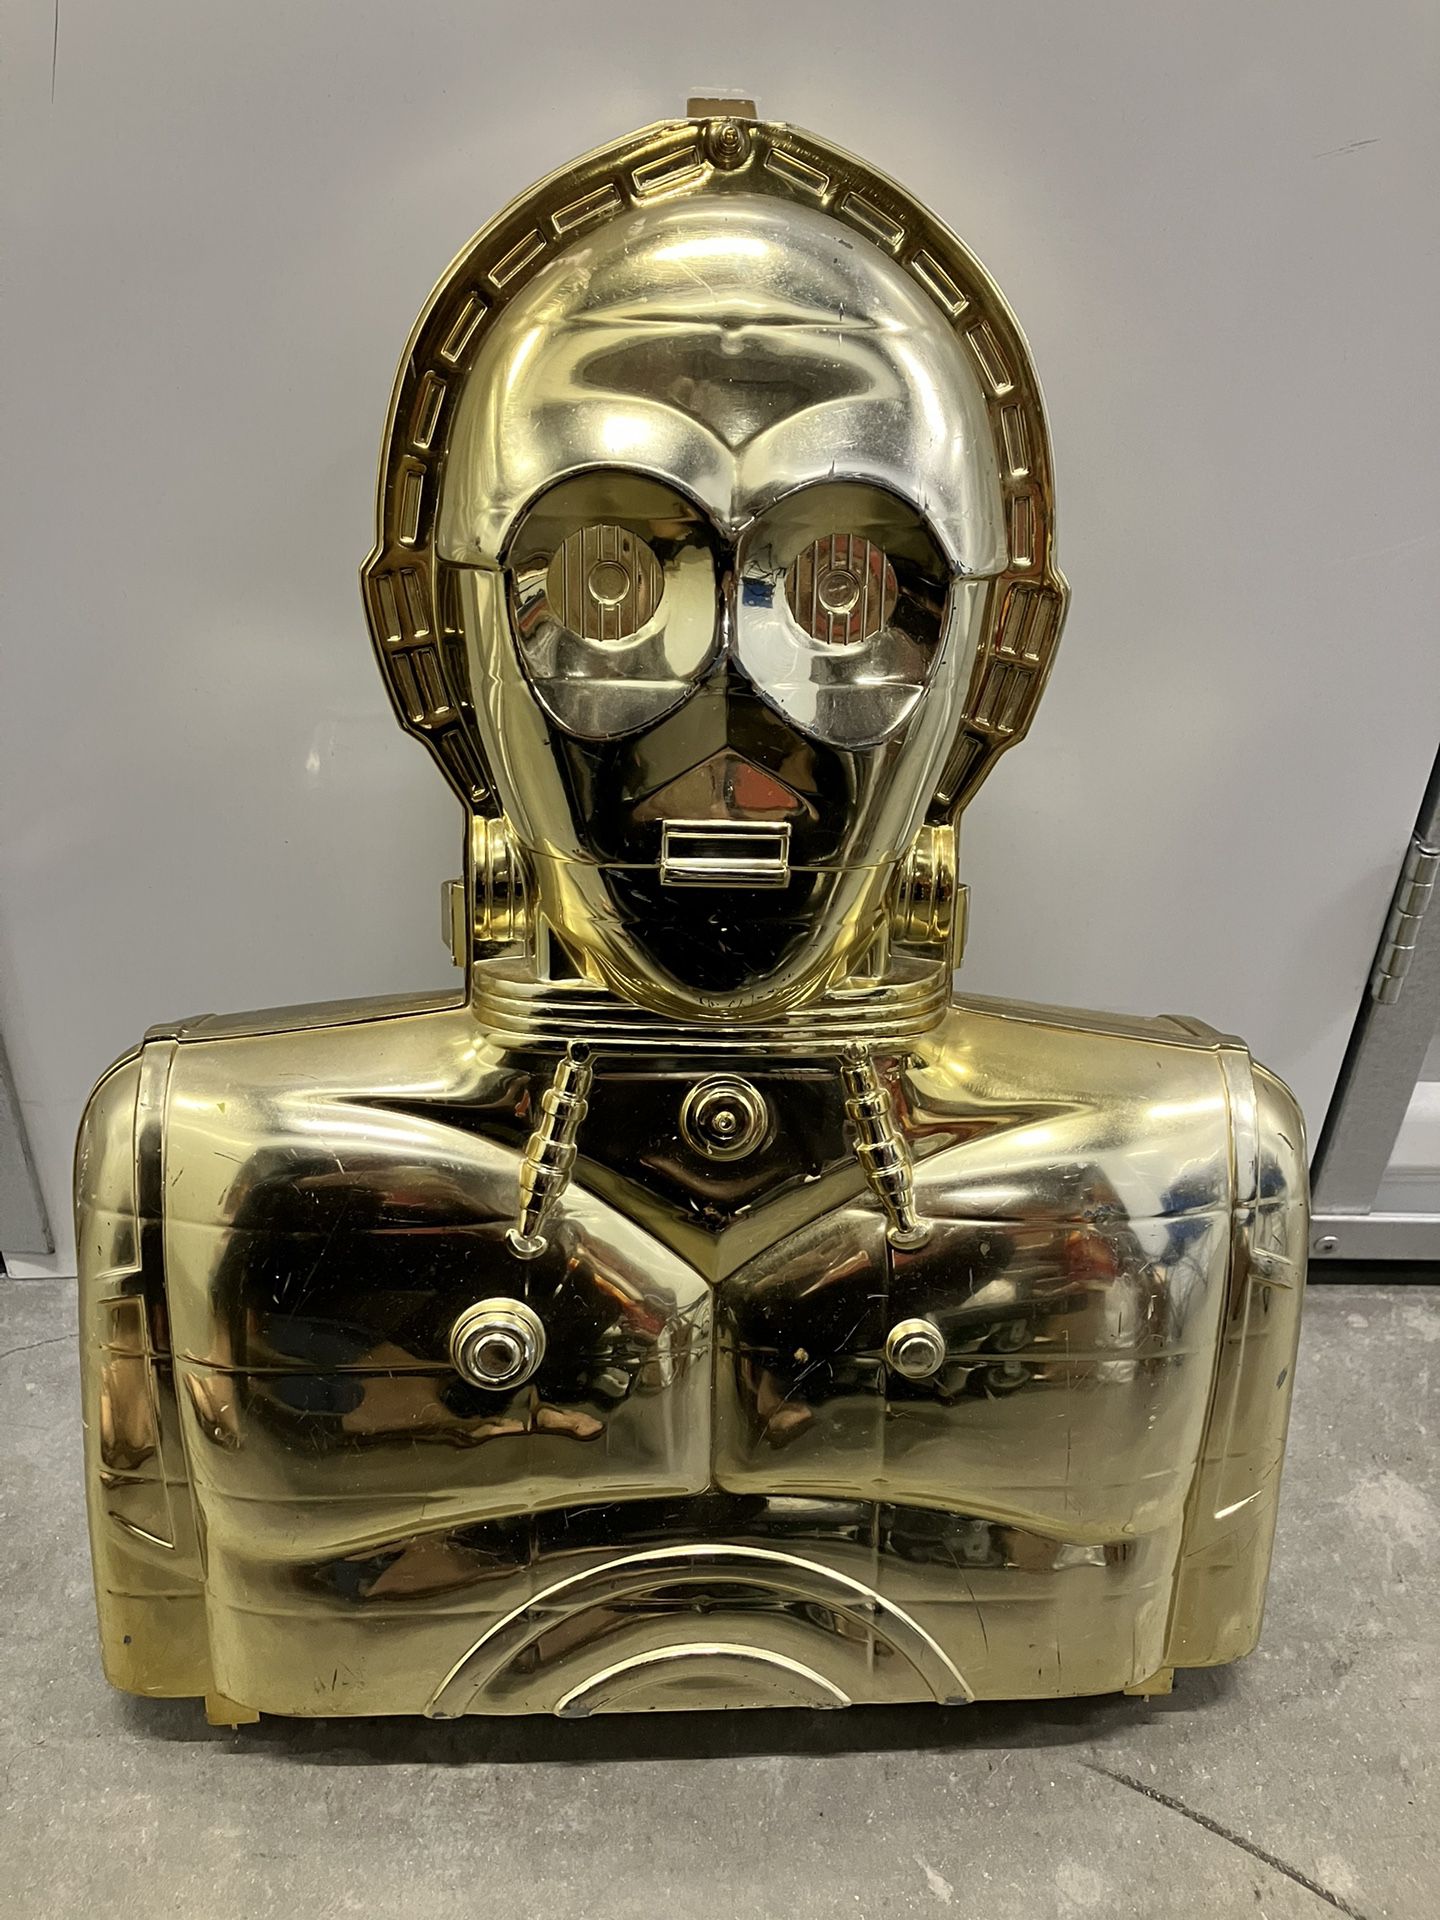 Vintage Kenner Star Wars C-3PO Action Figure Case collector